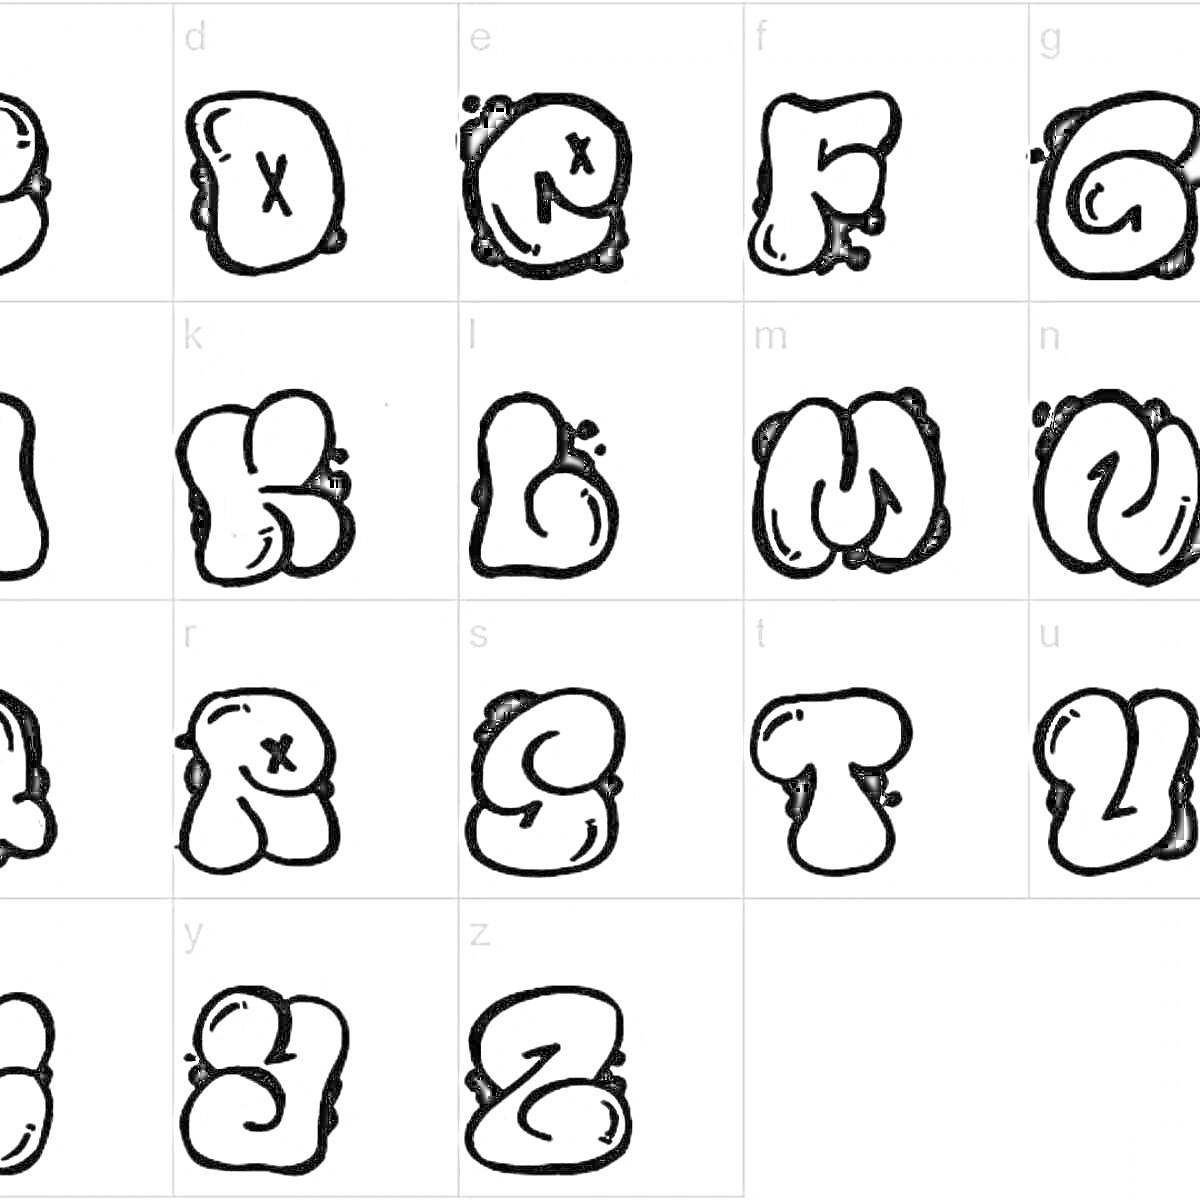 Граффити алфавит с буквами от A до Z в черном контуре